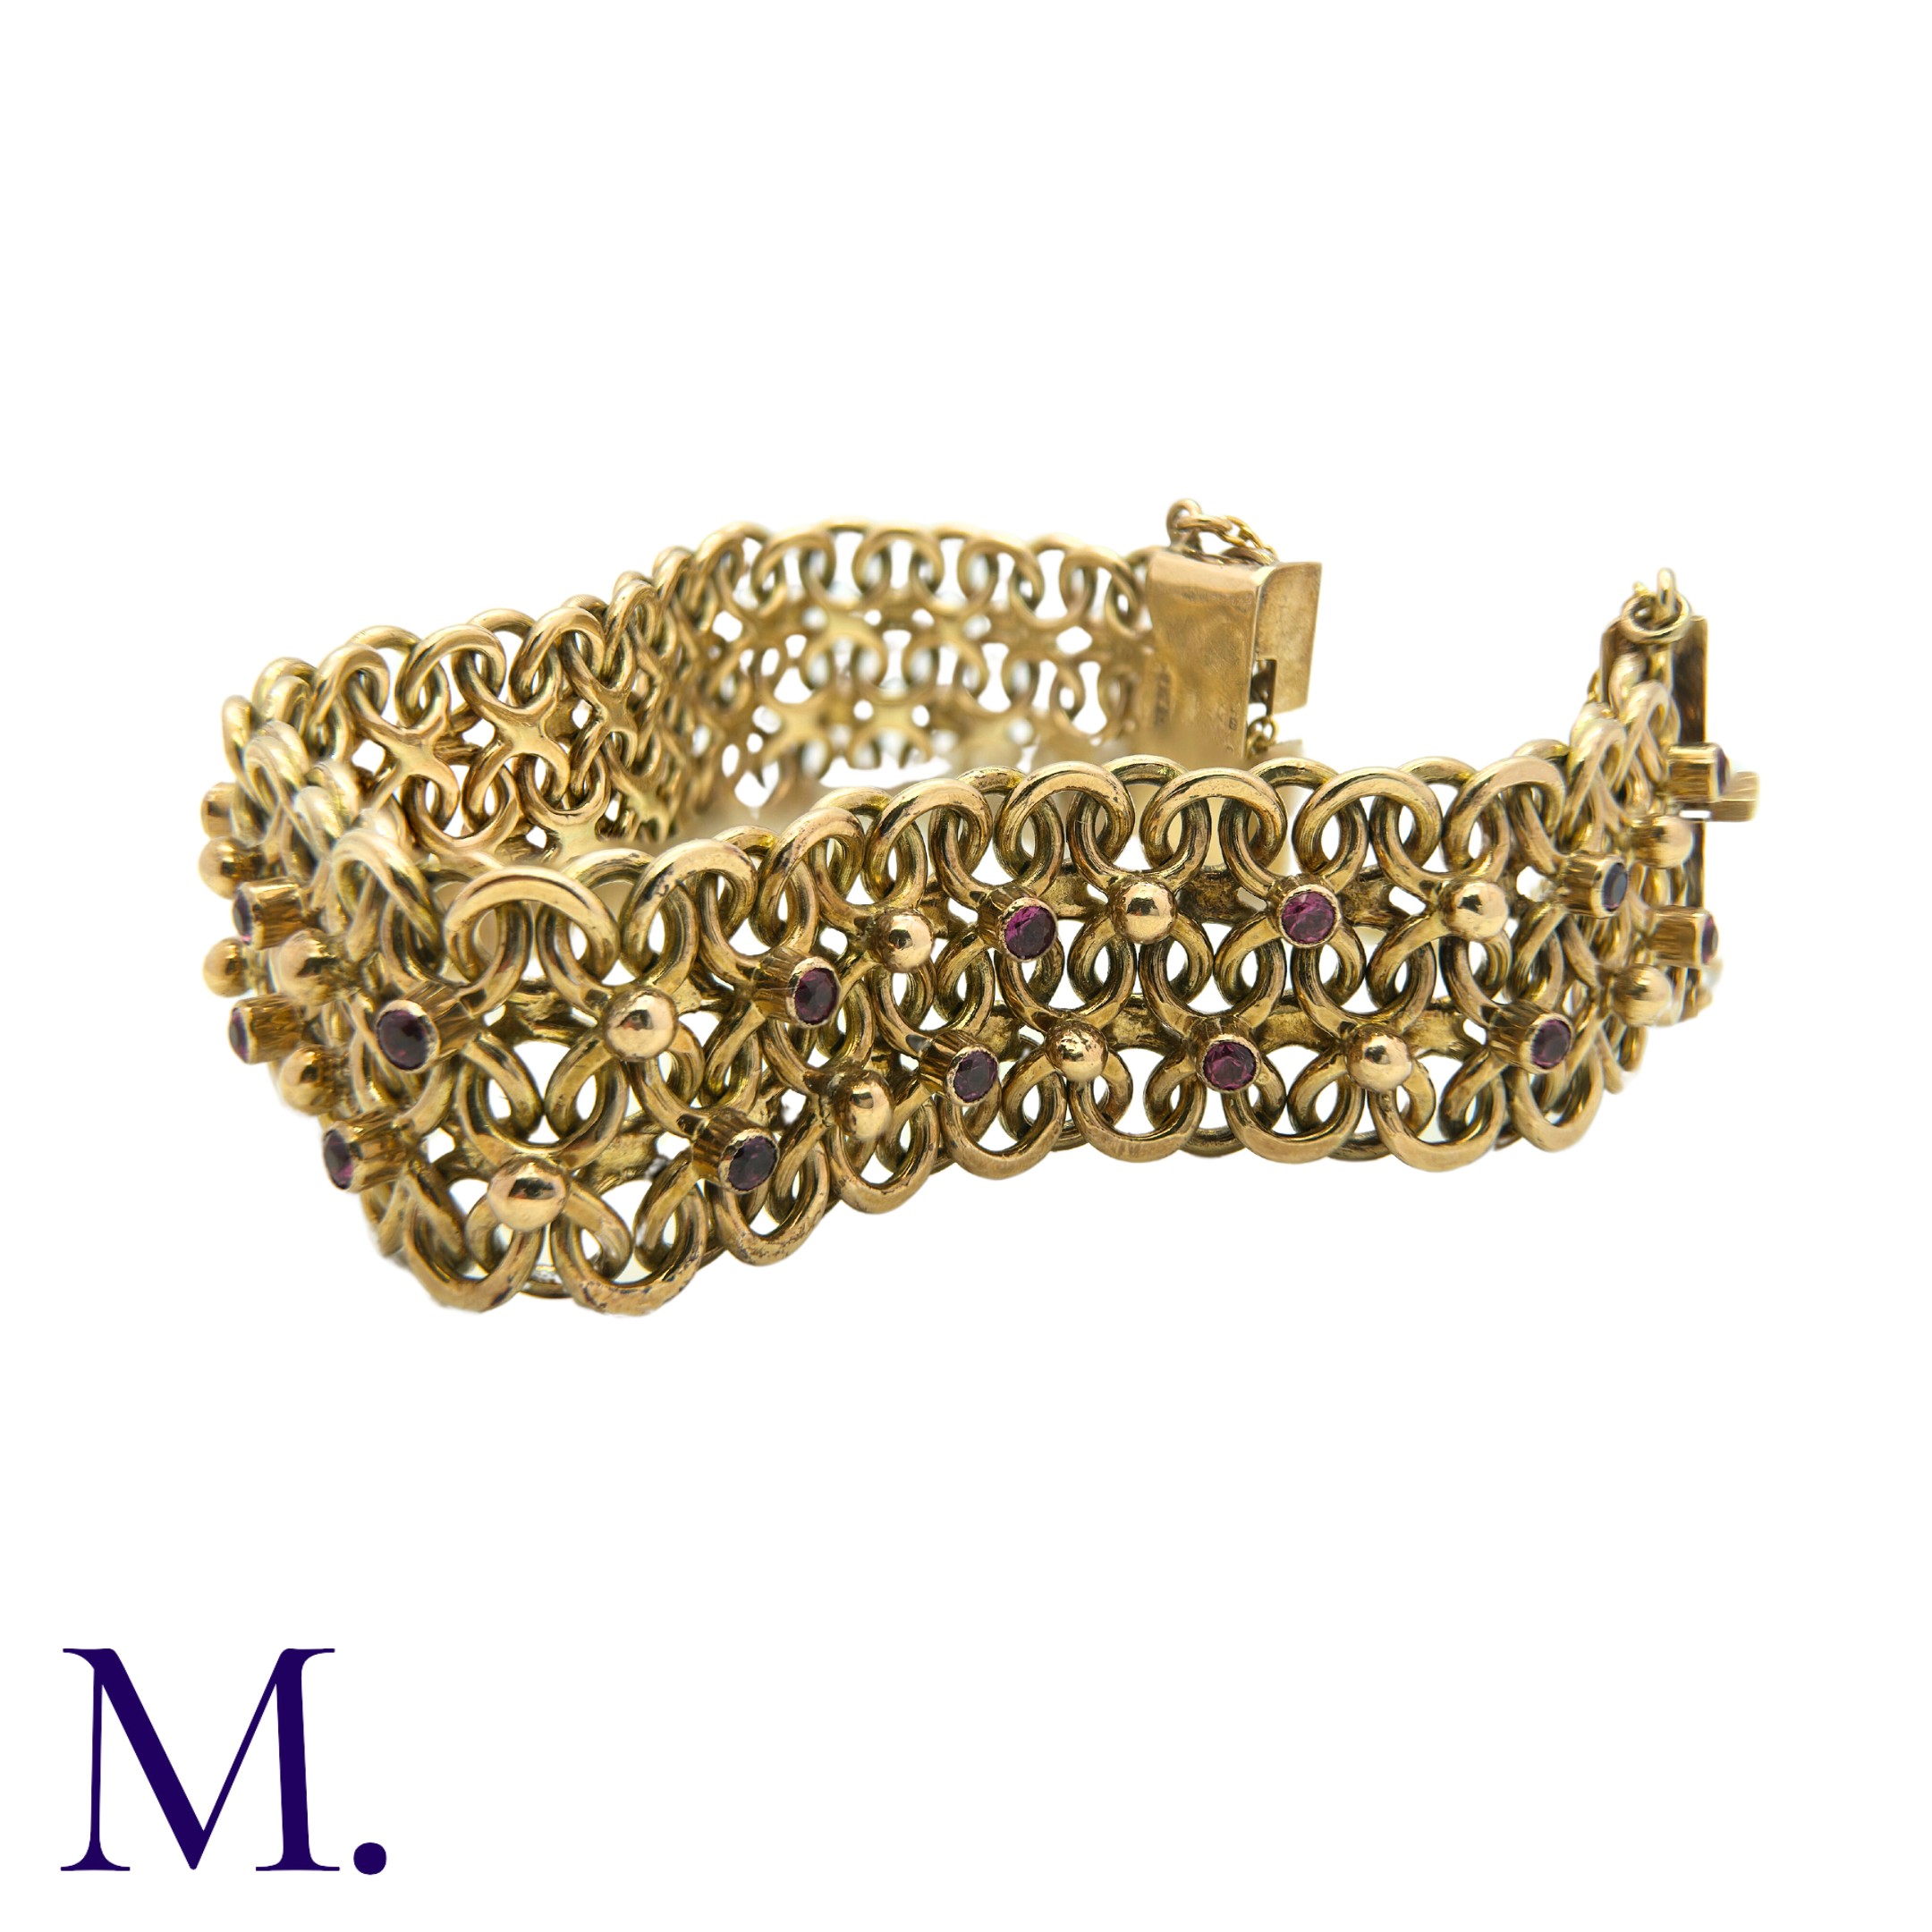 A Garnet-Set Bracelet in 9K yellow gold, set with 26 round cut garnets to a wide, fancy link chain - Bild 3 aus 3